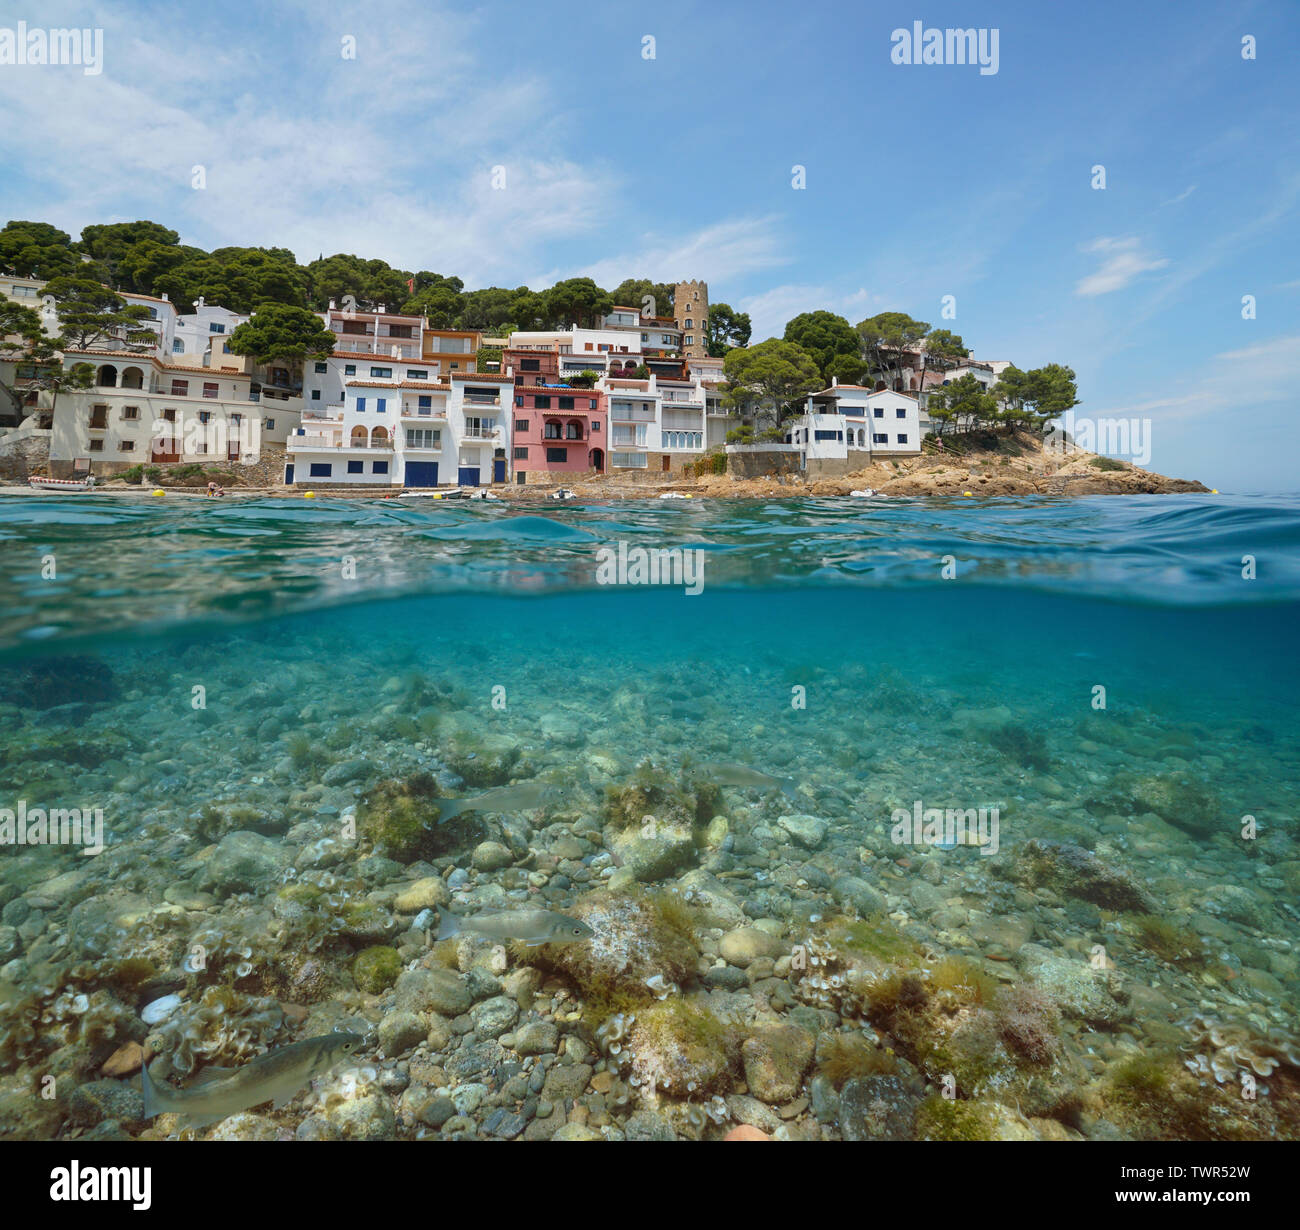 Côte de village méditerranéen, sur la Costa Brava en Espagne avec des poissons de mer et les roches sous l'eau, Sa Tuna, Begur, Catalogne, sur et sous l'eau Banque D'Images